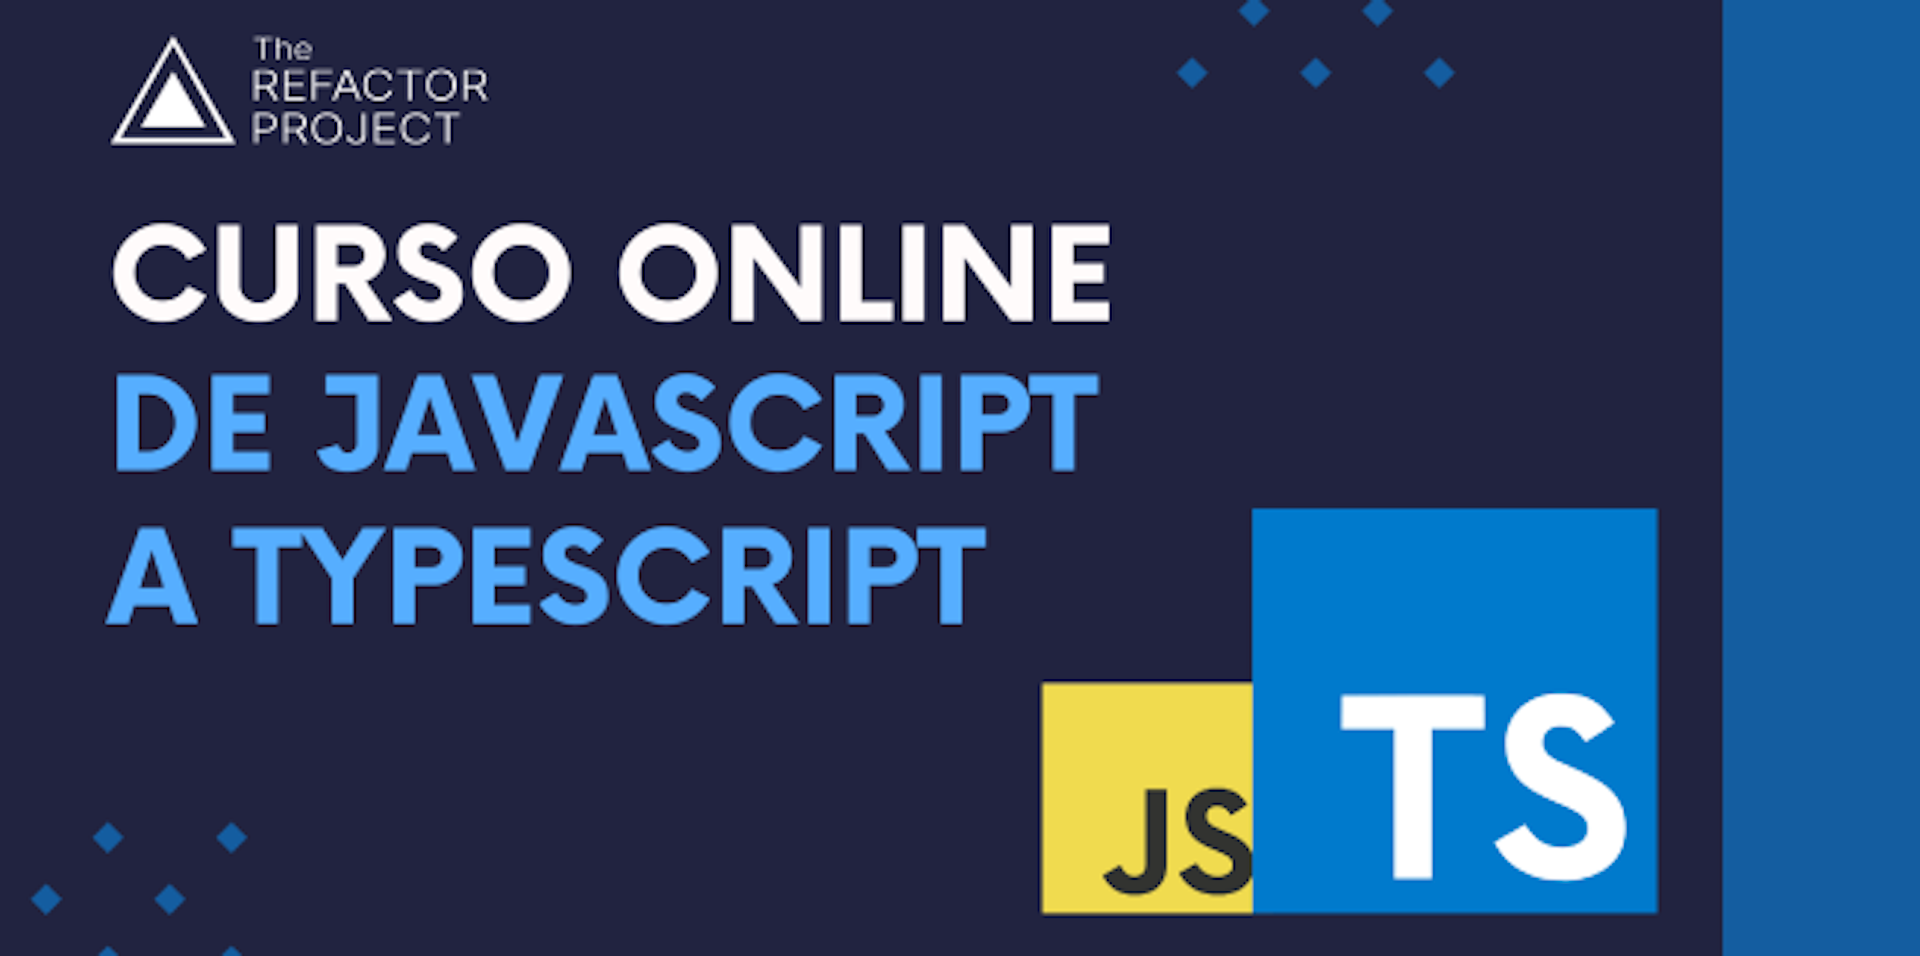 Curso De JavaScript a TypeScript